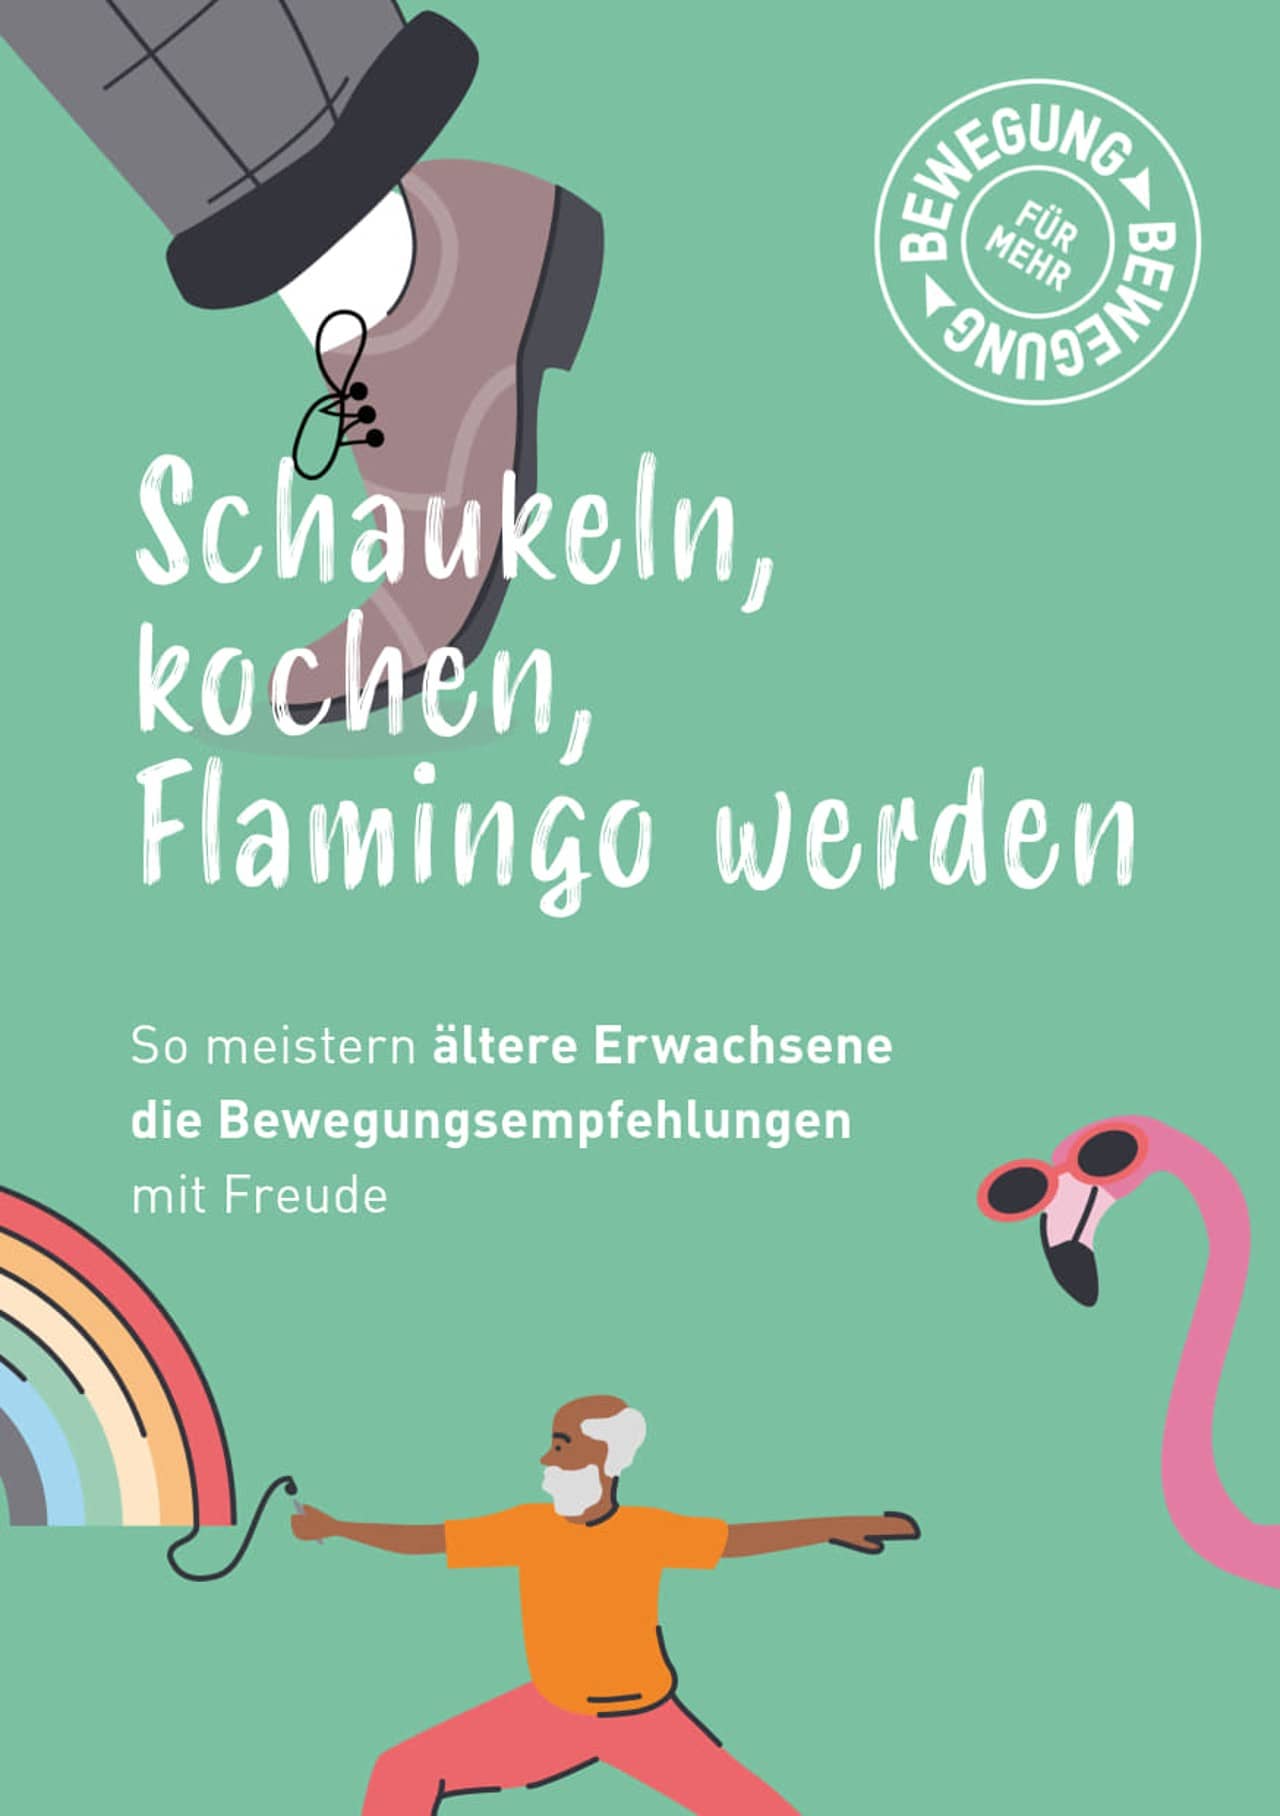 Titelseite des Booklets "Schaukeln, Kochen, Flamingo werden", grüner Hintergrund, Zeichnungen von Schuh, Flamingo und älterem Mann mit Regenbogen